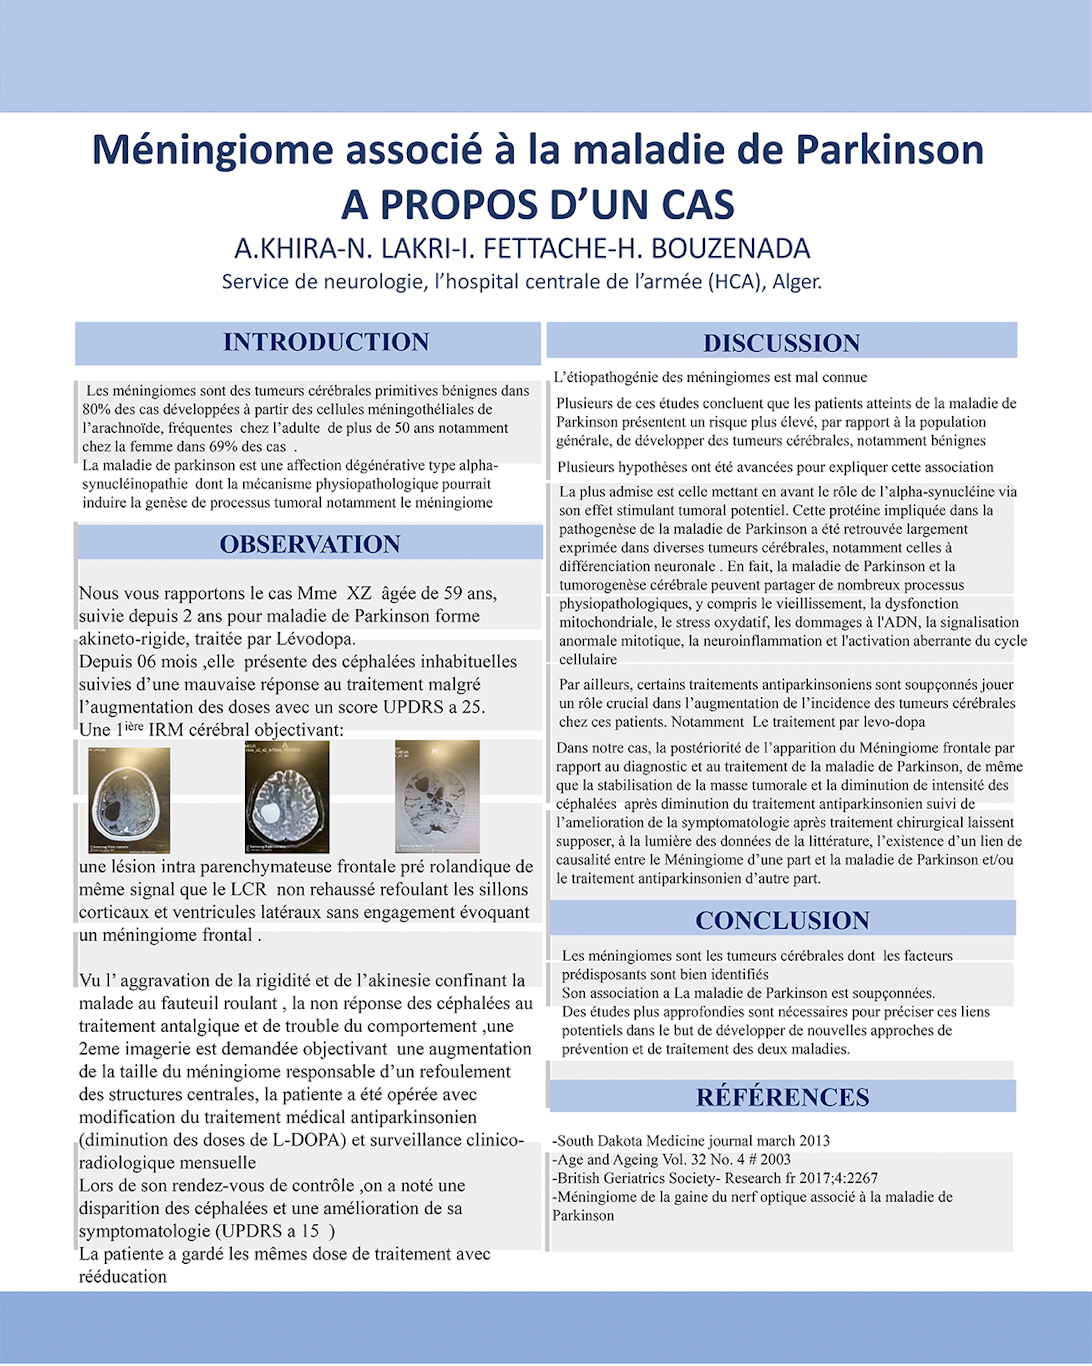 NV-38 Méningiome associé à la maladie de Parkinson, A propos d’un cas.